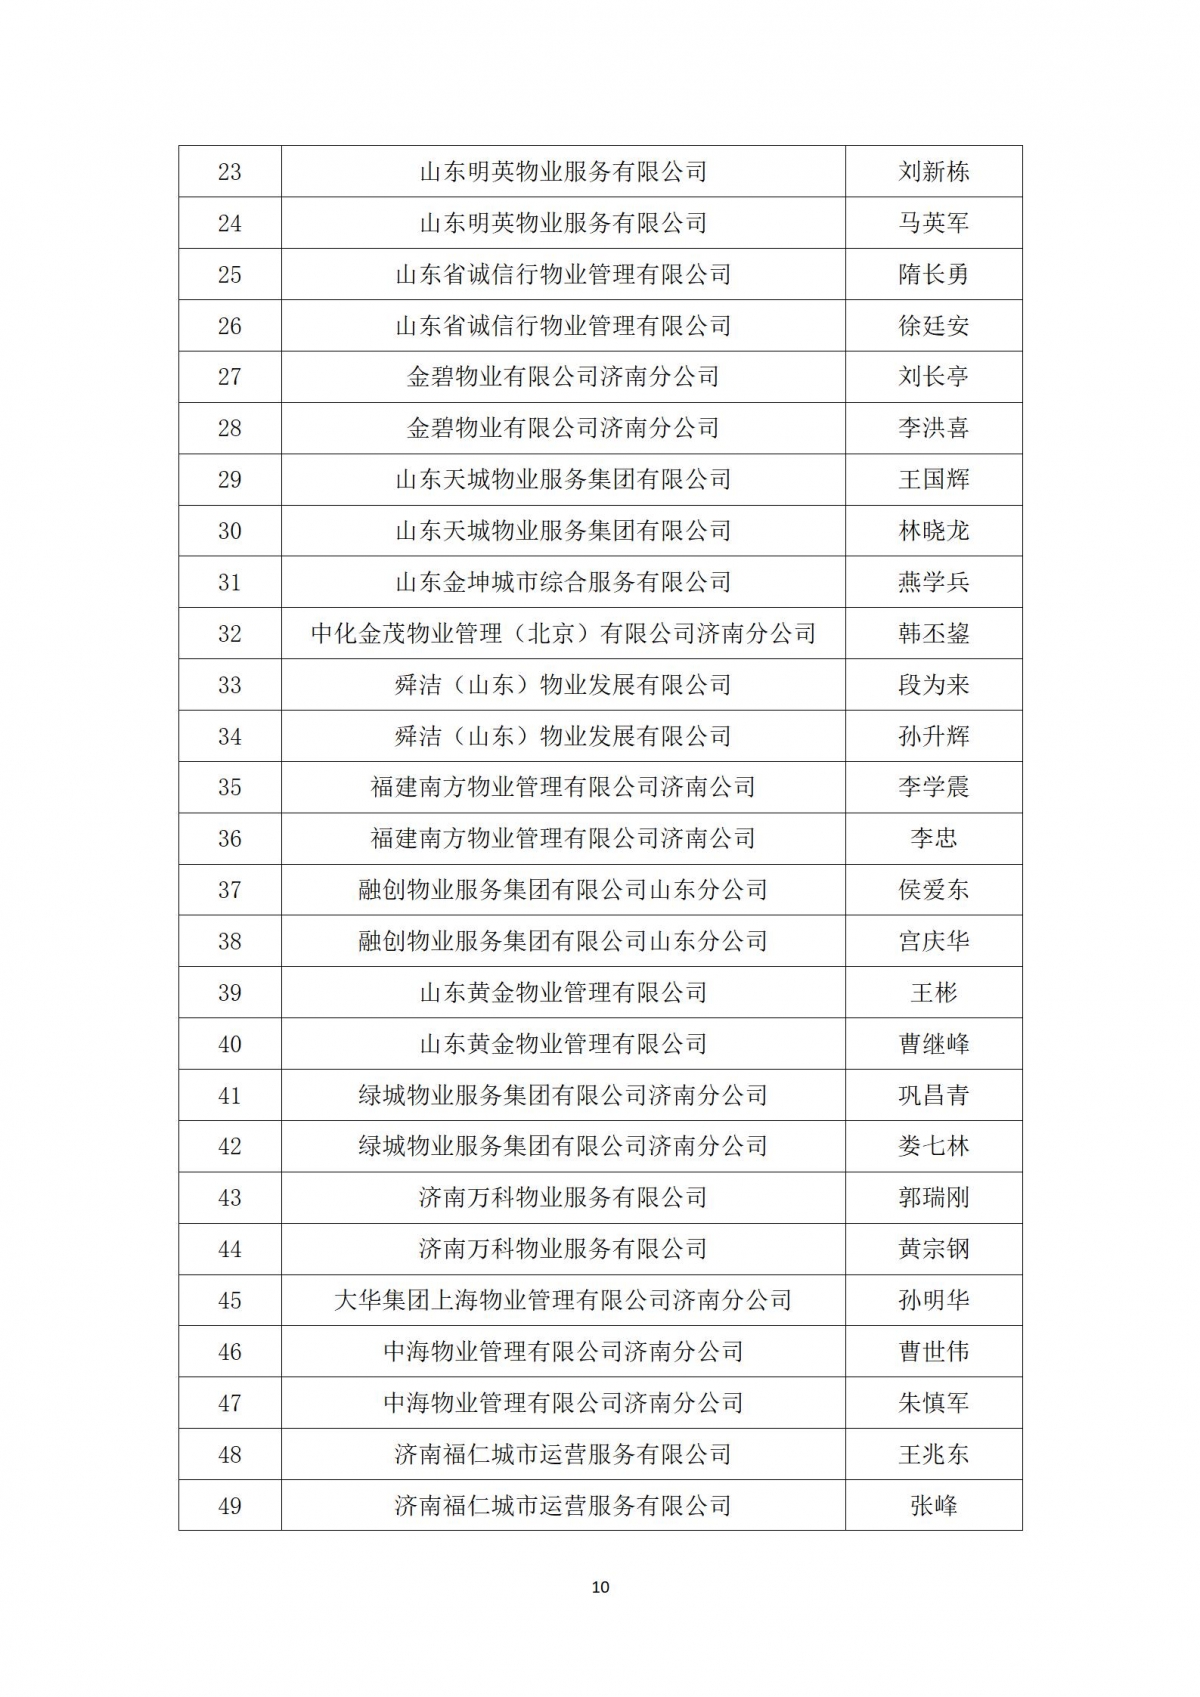 关于“天城杯”第七届济南市物业服务行业职业技能竞赛选手名单的公示_10